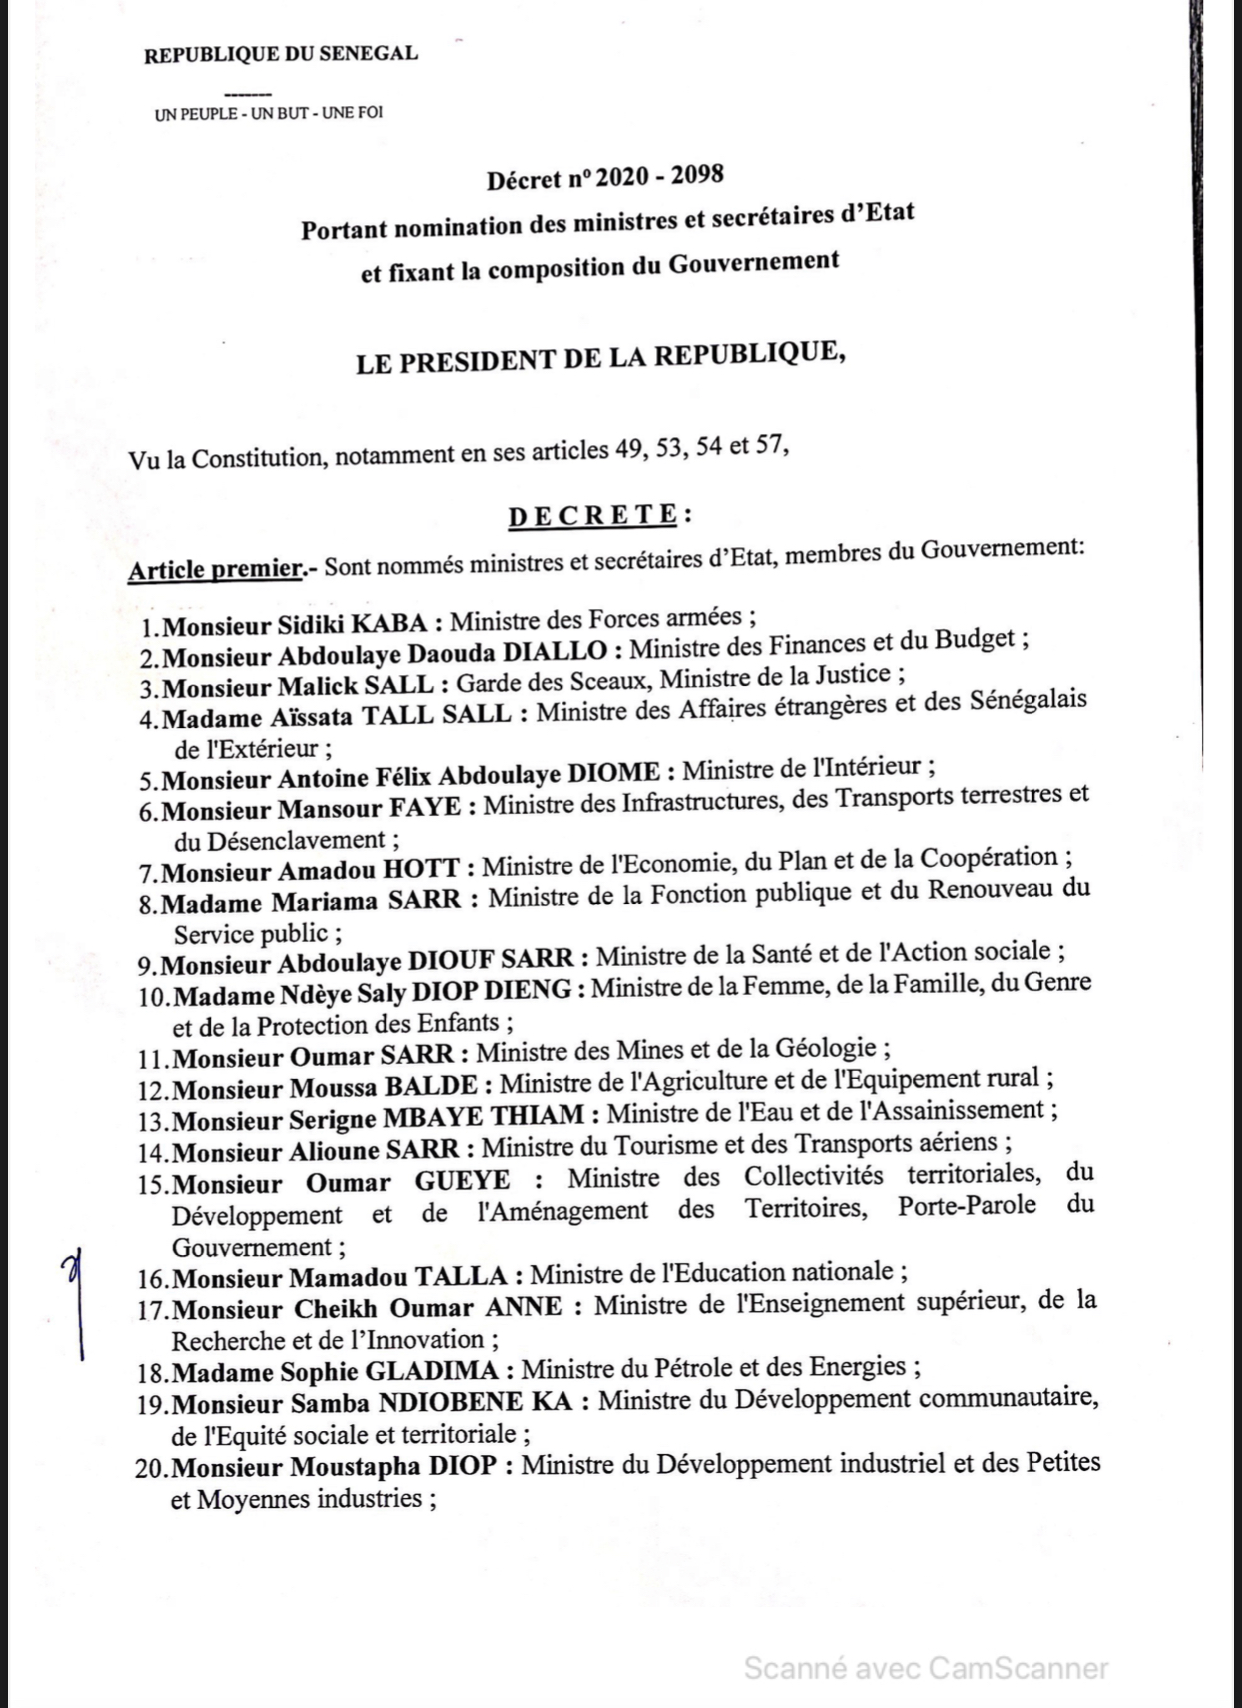 SÉNÉGAL : Voici la liste complète des membres du nouveau Gouvernement du président Macky Sall (DOCUMENT)